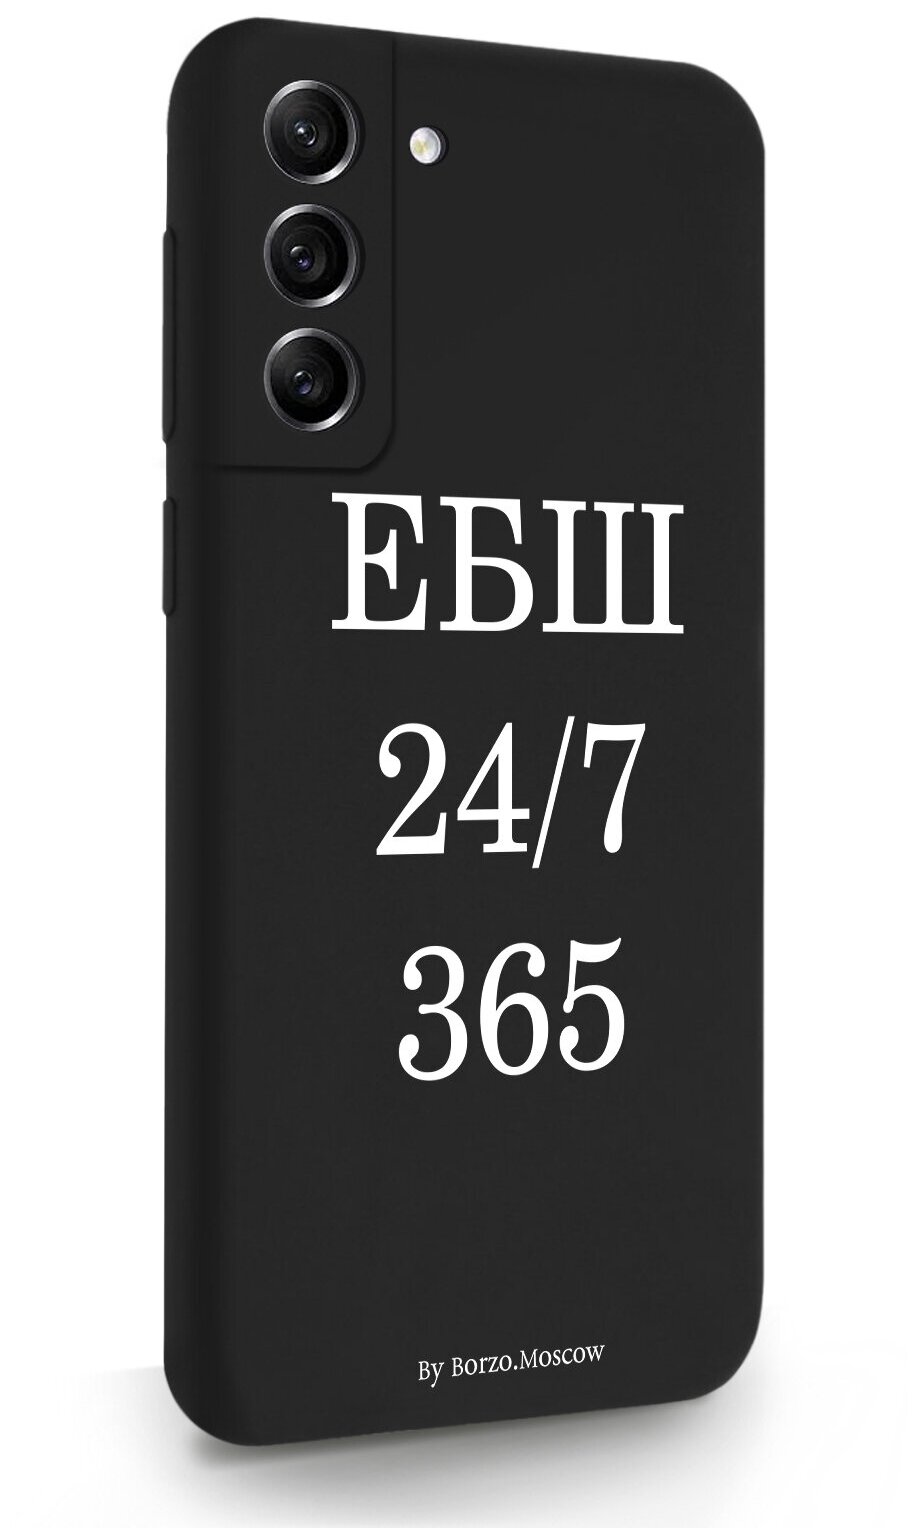 Черный силиконовый чехол Borzo.Moscow для Samsung Galaxy S21FE ЕБШ 24/7/365 для Самсунг Галакси С21ФЕ